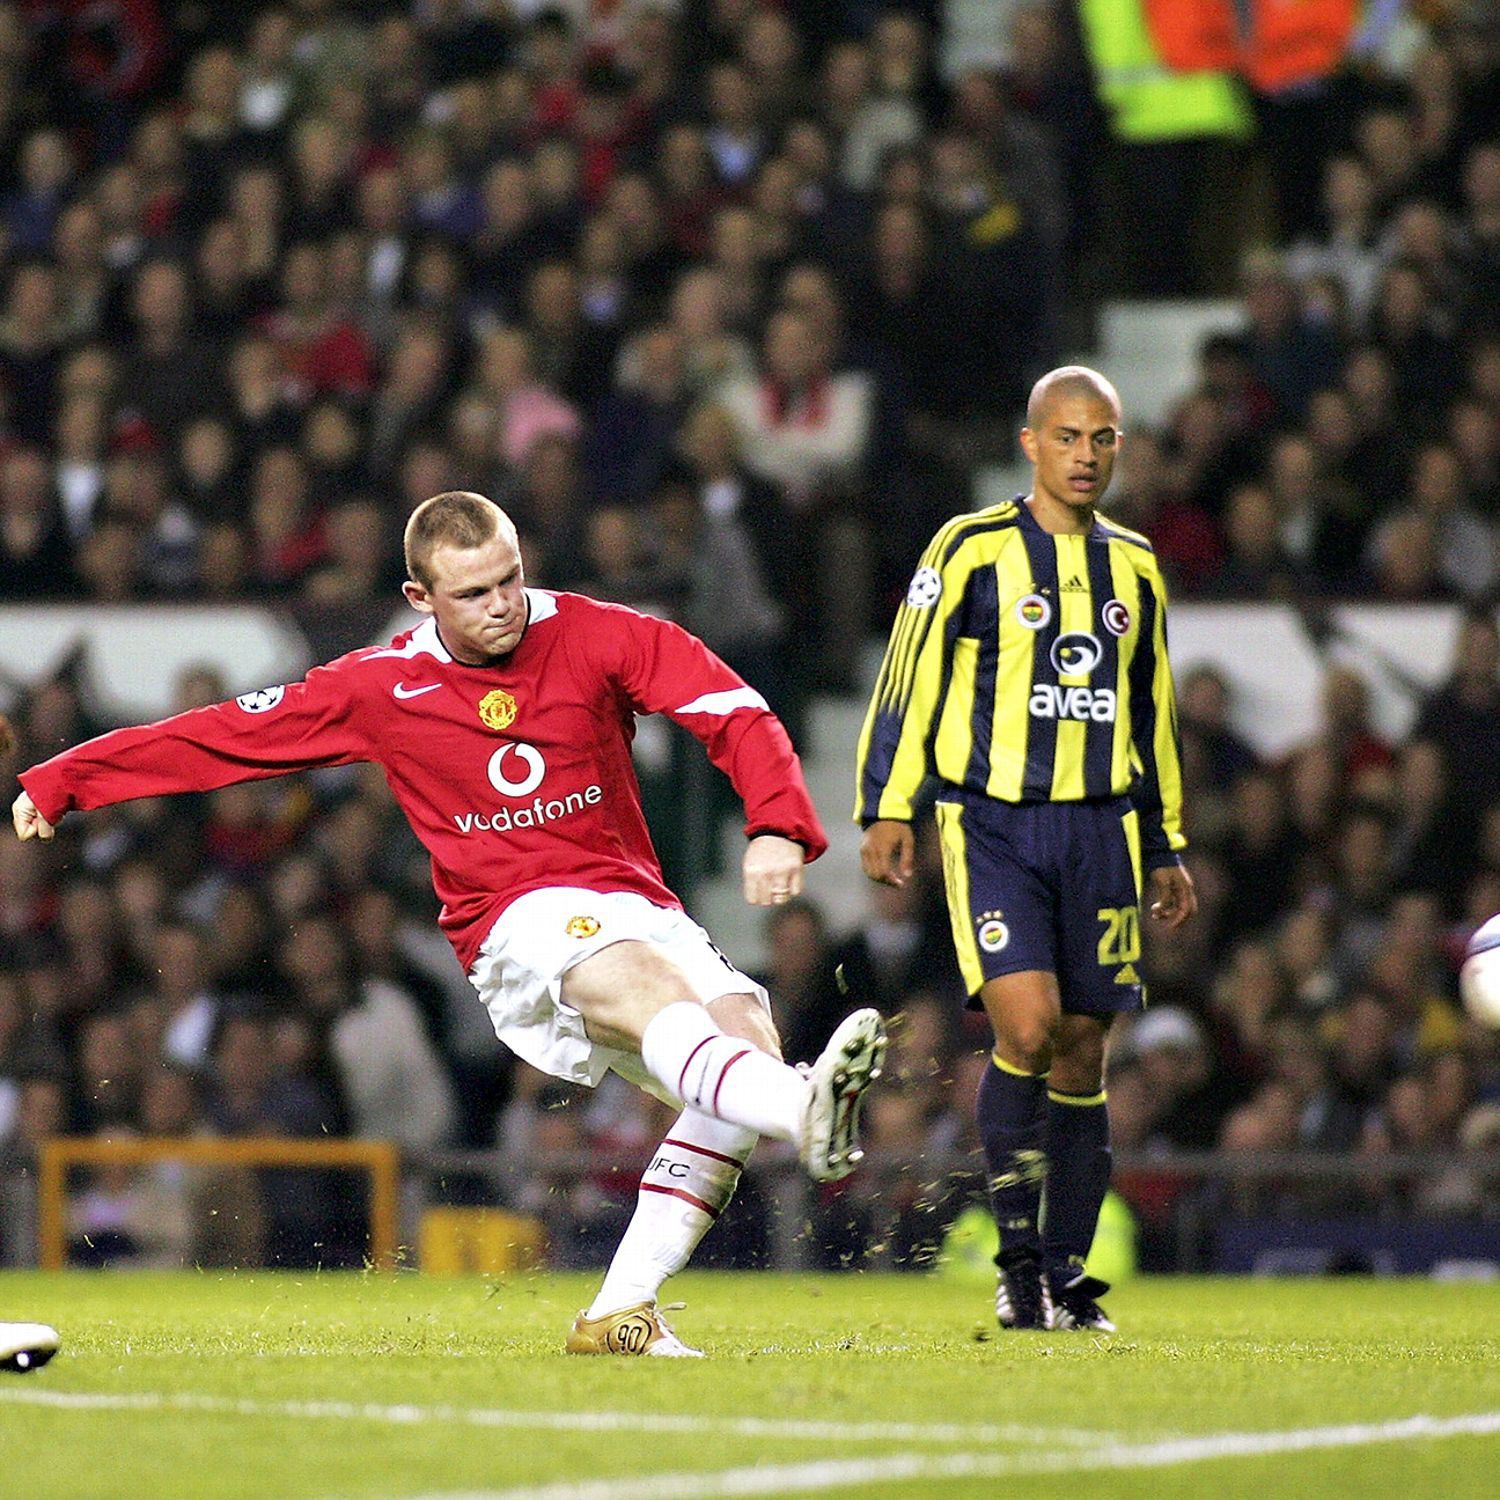 Hé lộ siêu phẩm Wayne Rooney ghi ở tuổi 12 nhân kỷ niệm 14 năm ra mắt ở Man Utd - Ảnh 1.